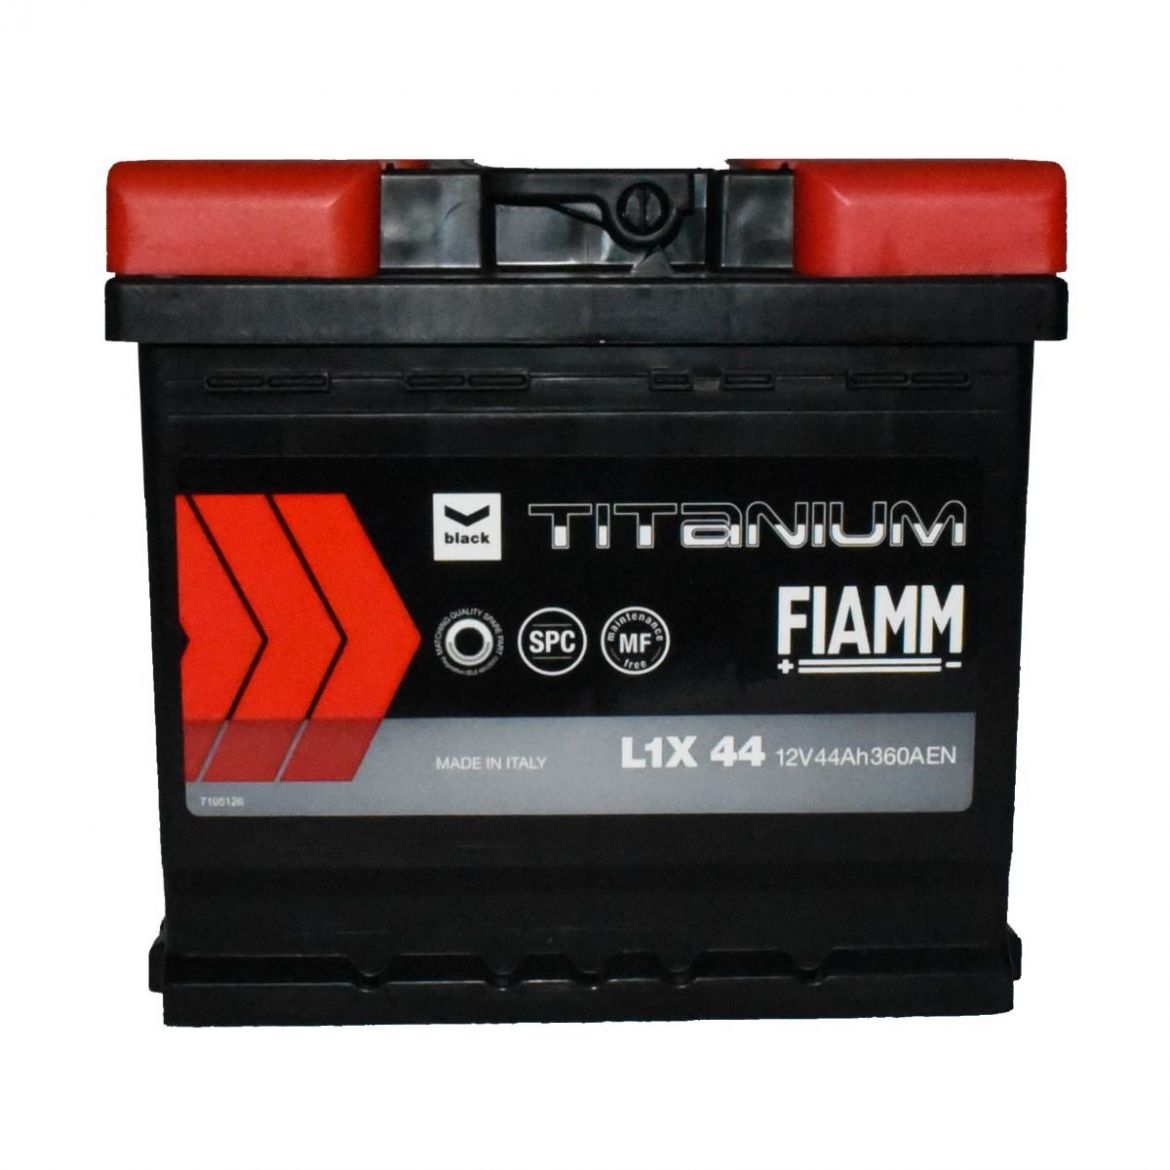 L1X 44 Fiamm Professional starter SMF accu